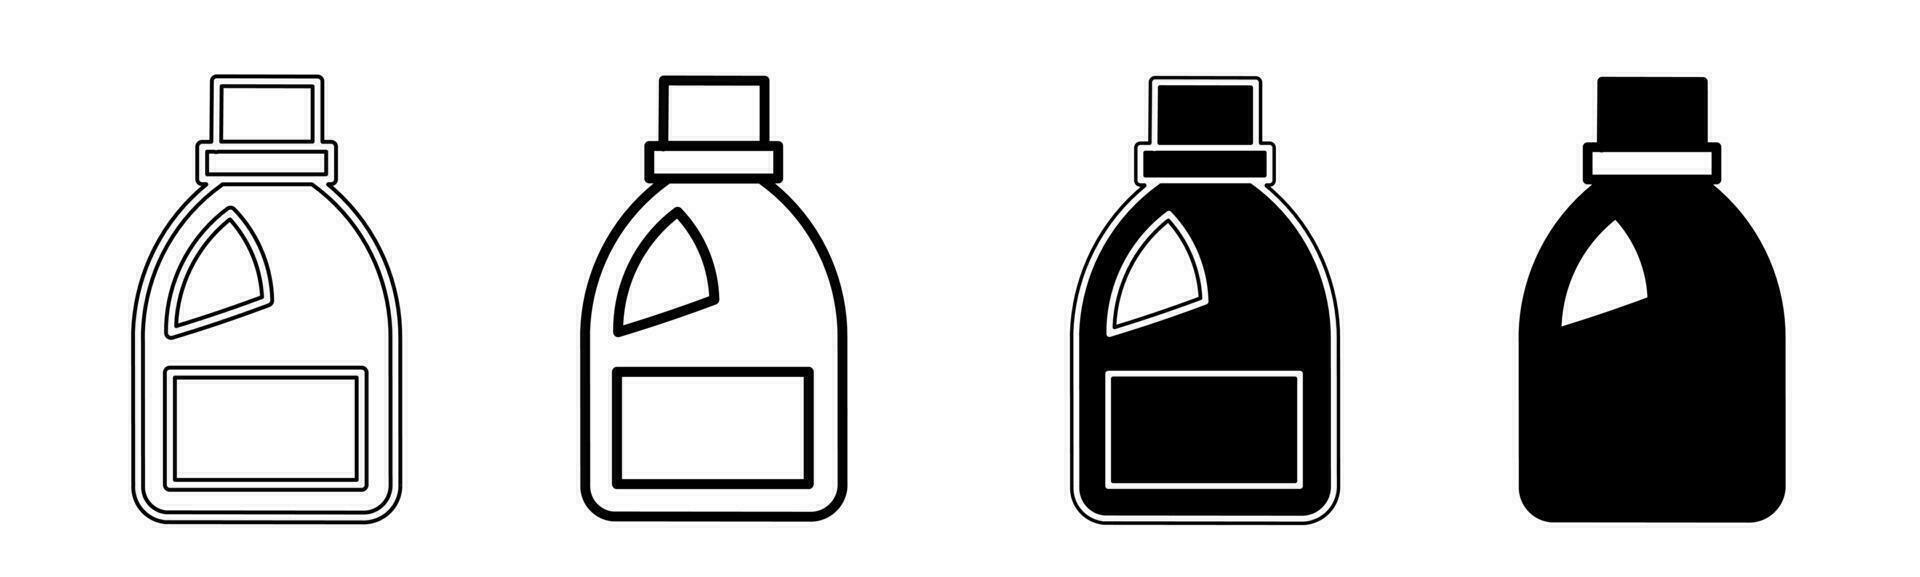 schwarz und Weiß Illustration von ein Flüssigkeit Flasche. Flüssigkeit Flasche Symbol Sammlung mit Linie. Lager Vektor Illustration.